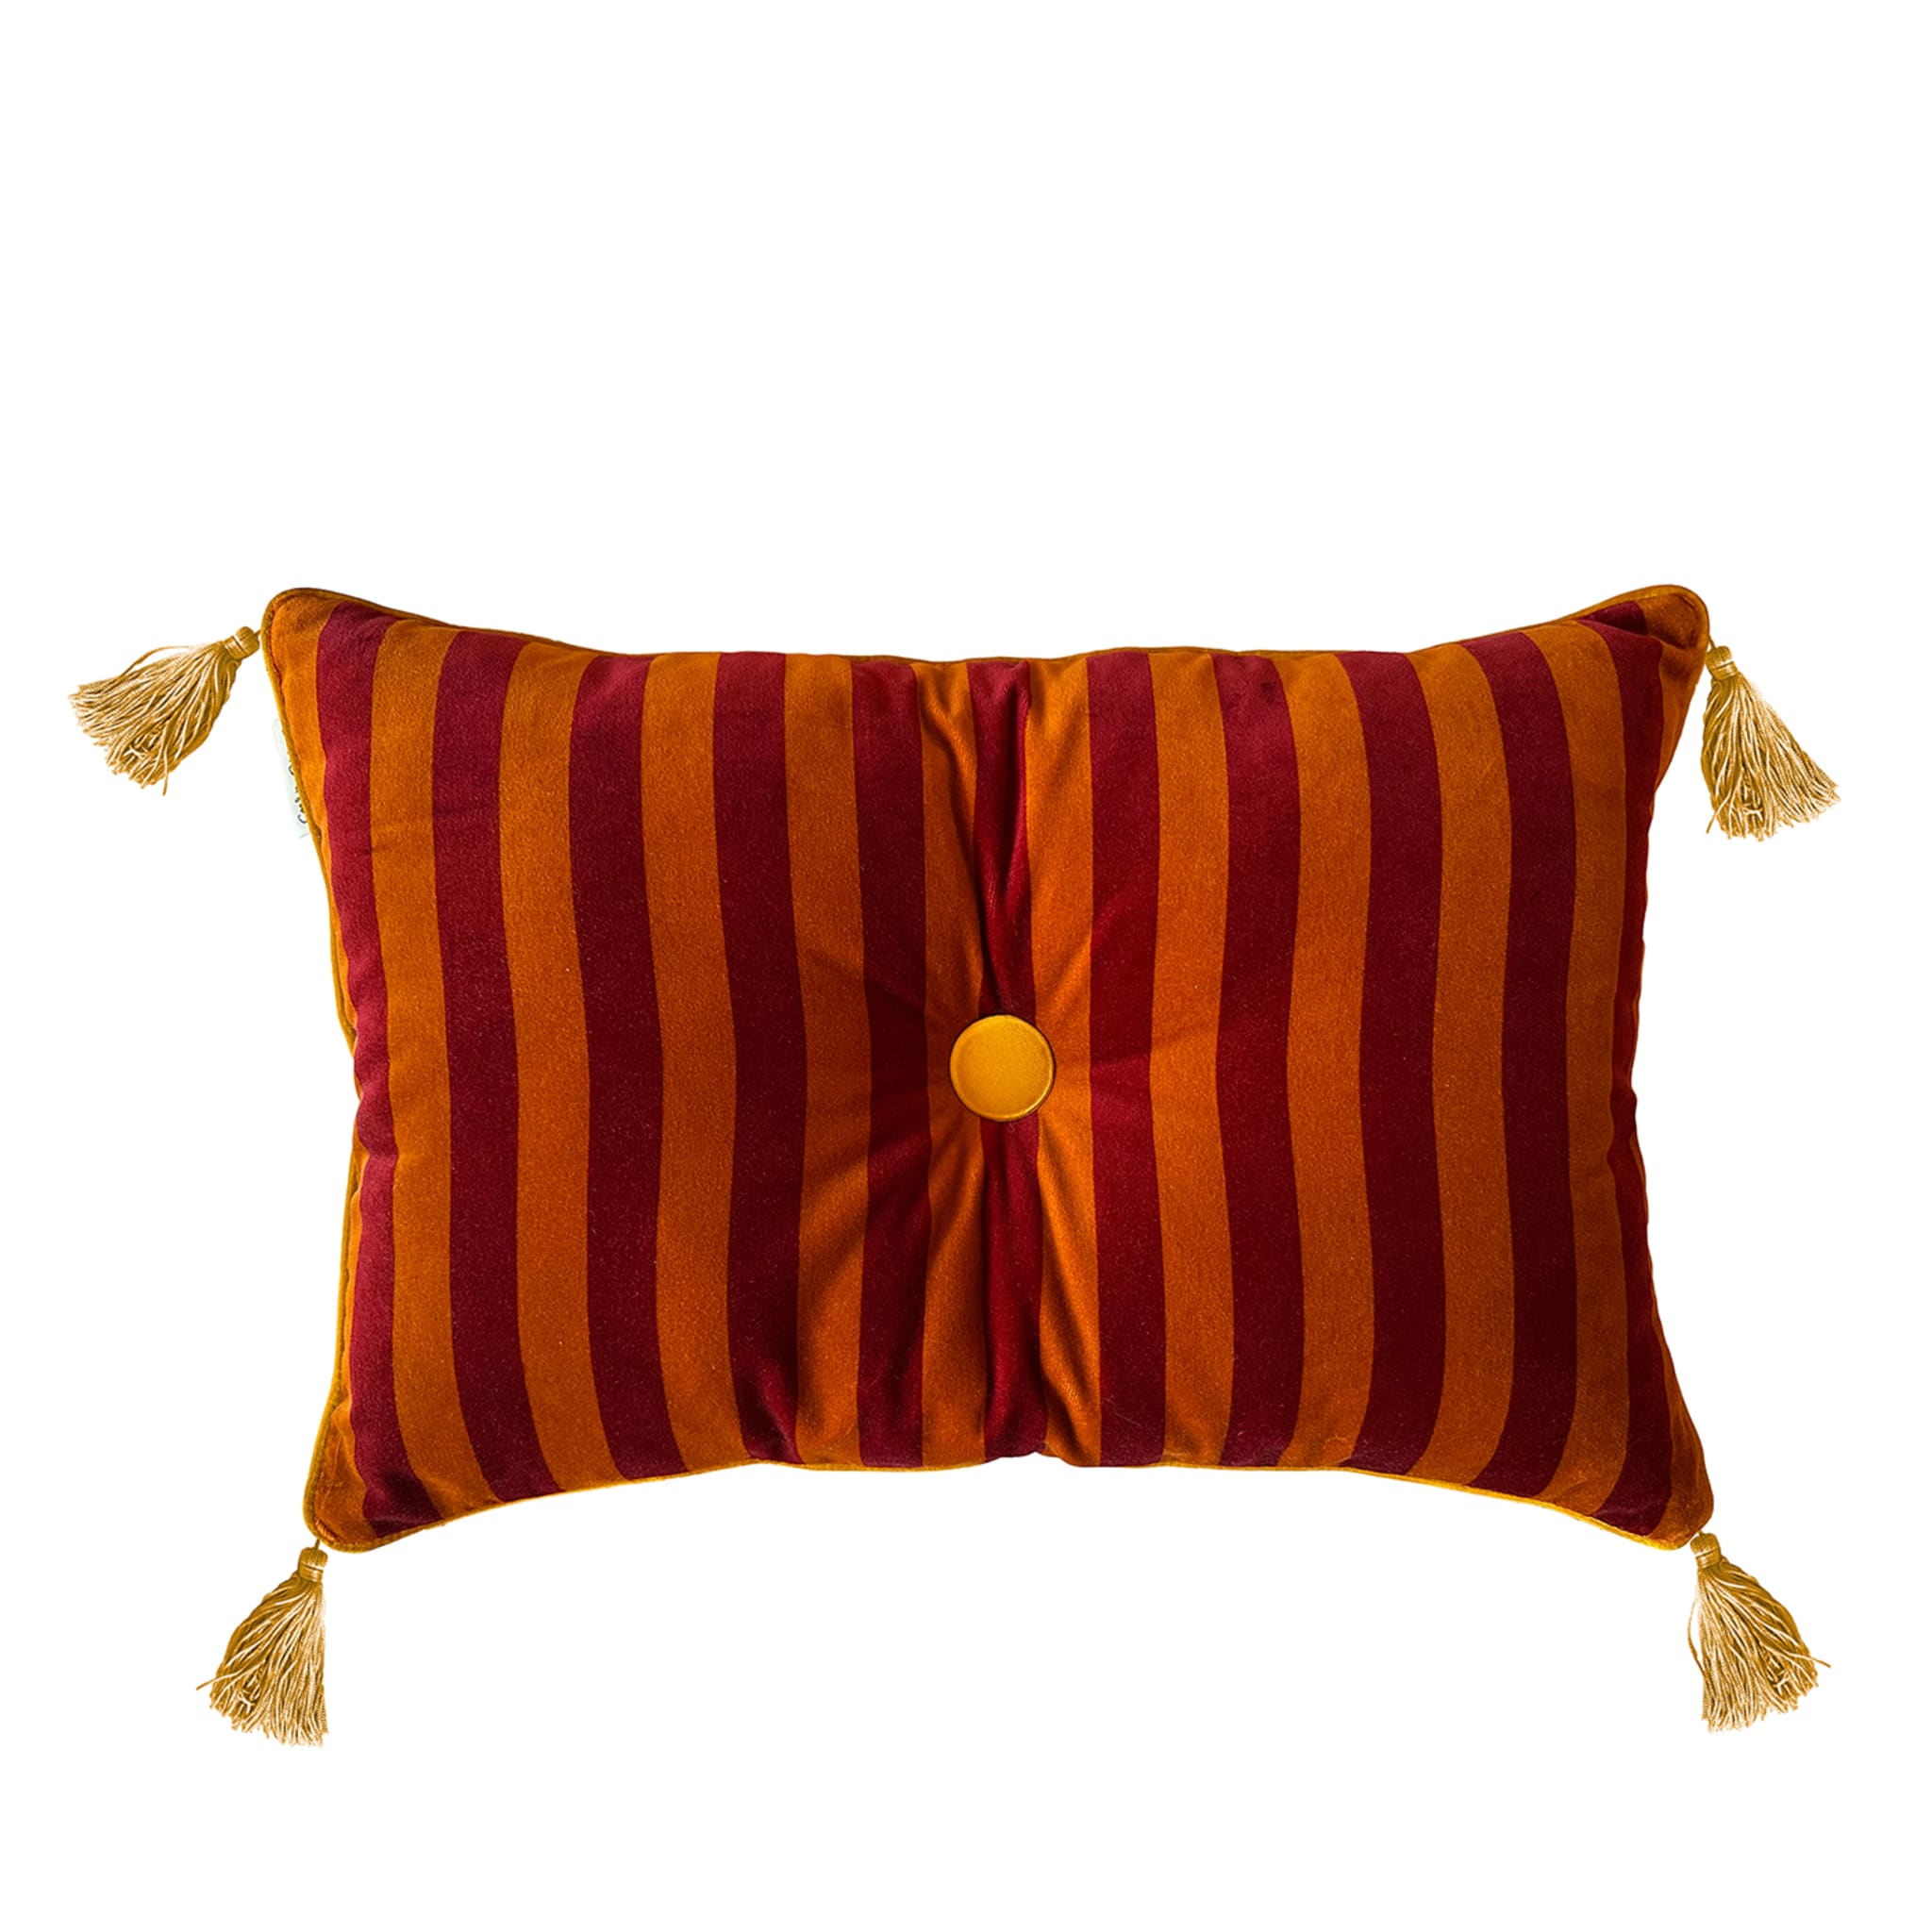 Cuscino Sweet Pillow rettangolare a righe bordeaux e arancione - Vista principale